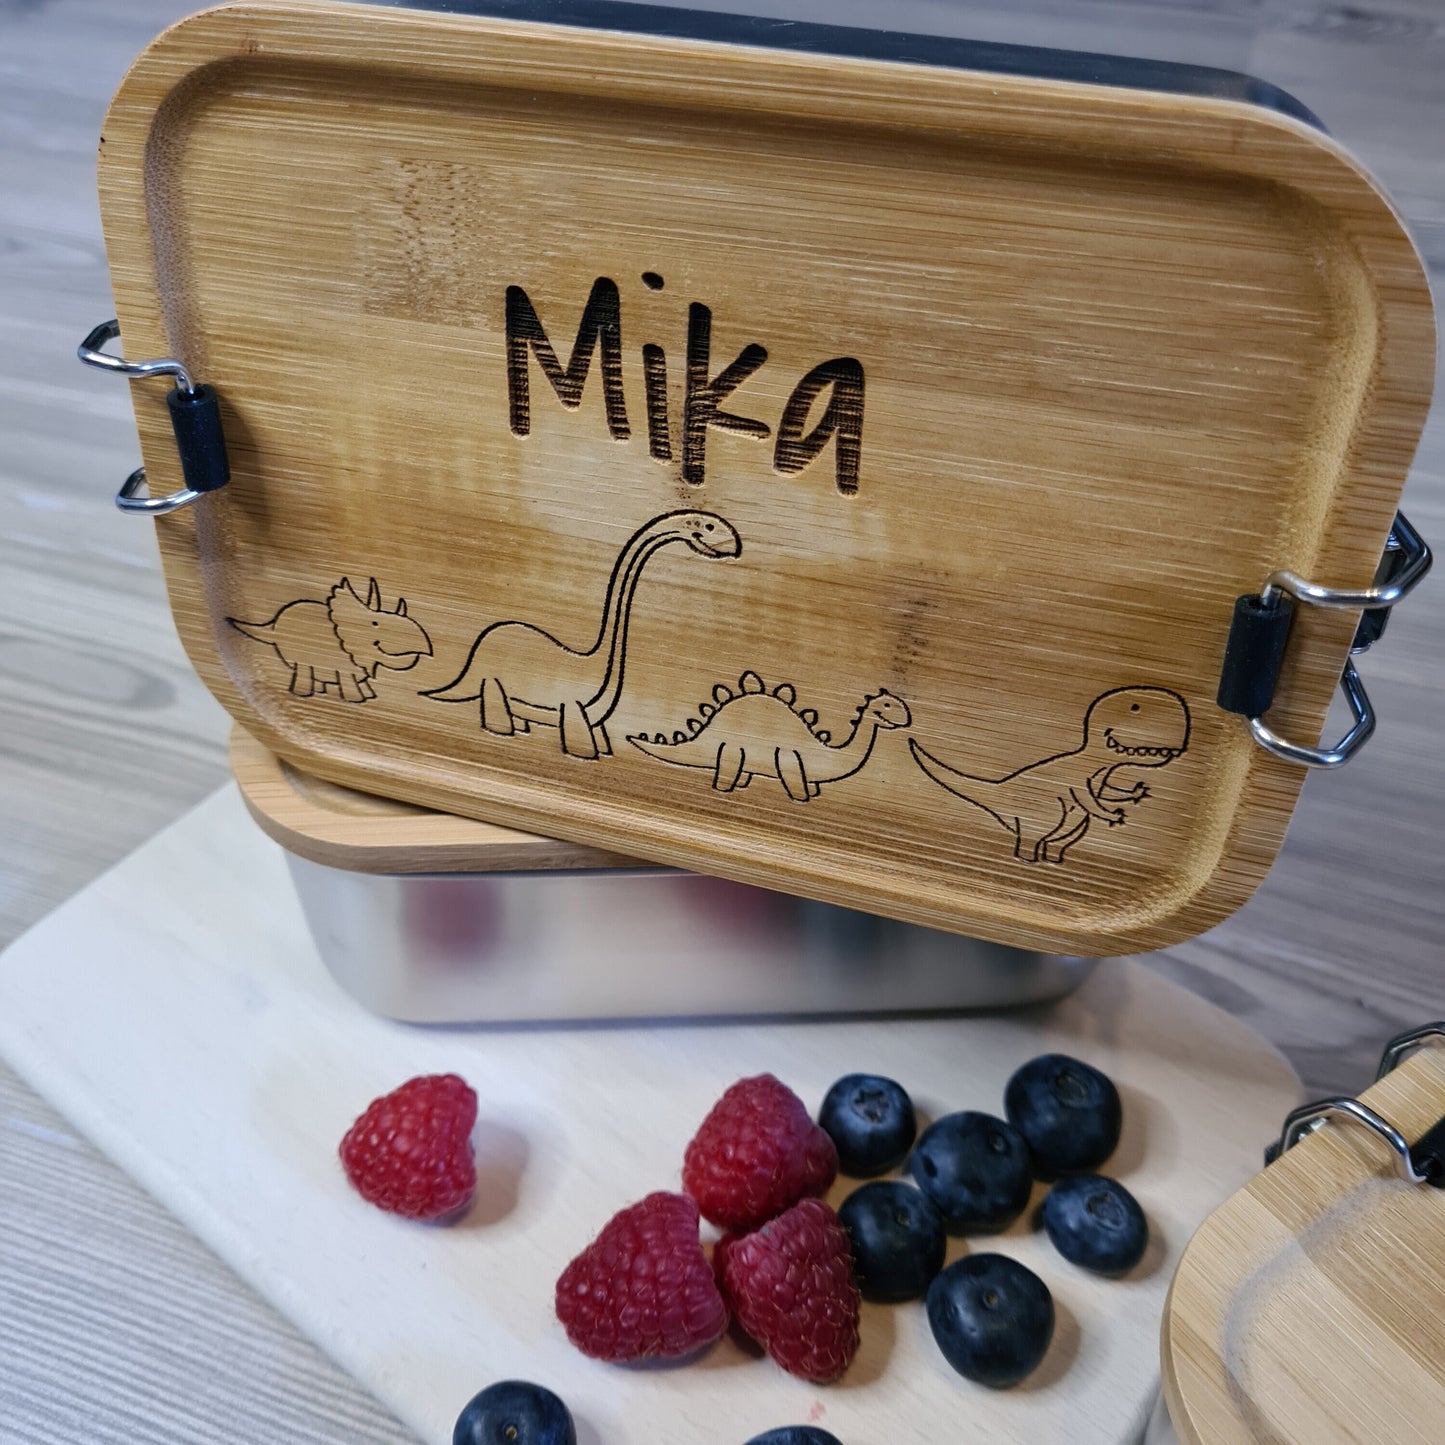 Lunchbox "Dinos" - mit Name personalisiert - aus Edelstahl mit Bambusdeckel